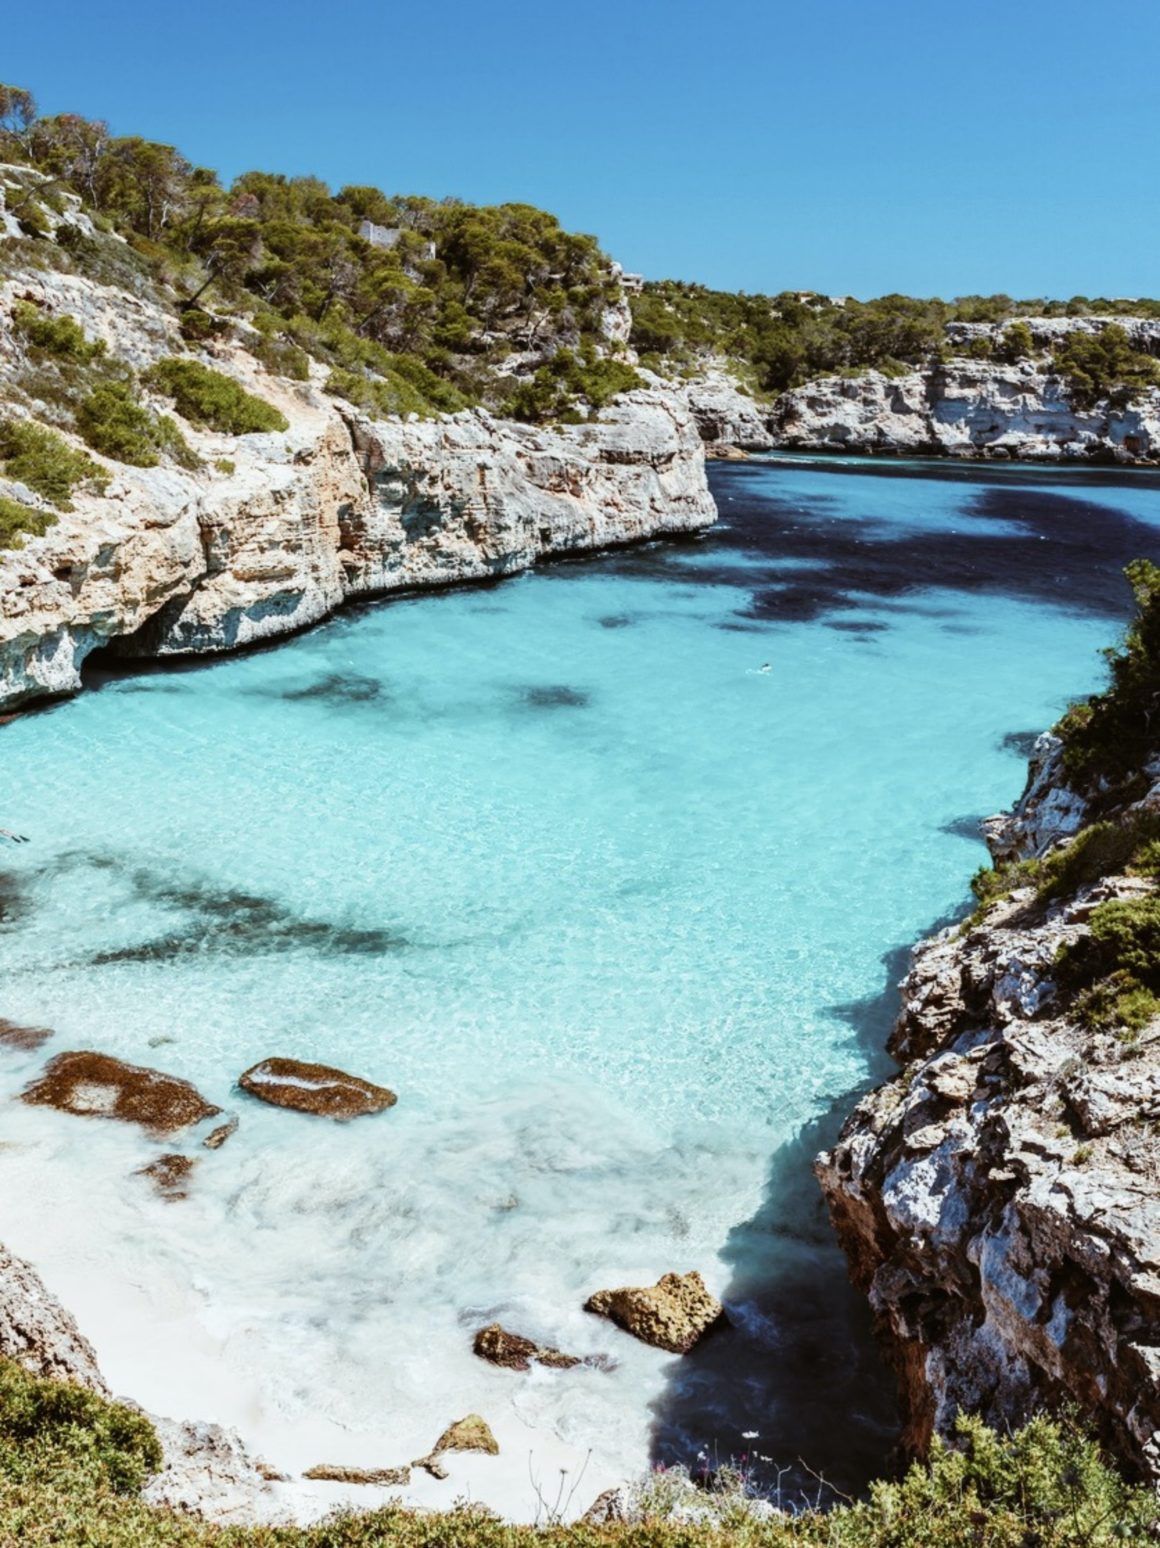 Comece o seu cruzeiro pelas ilhas baleares em Mallorca